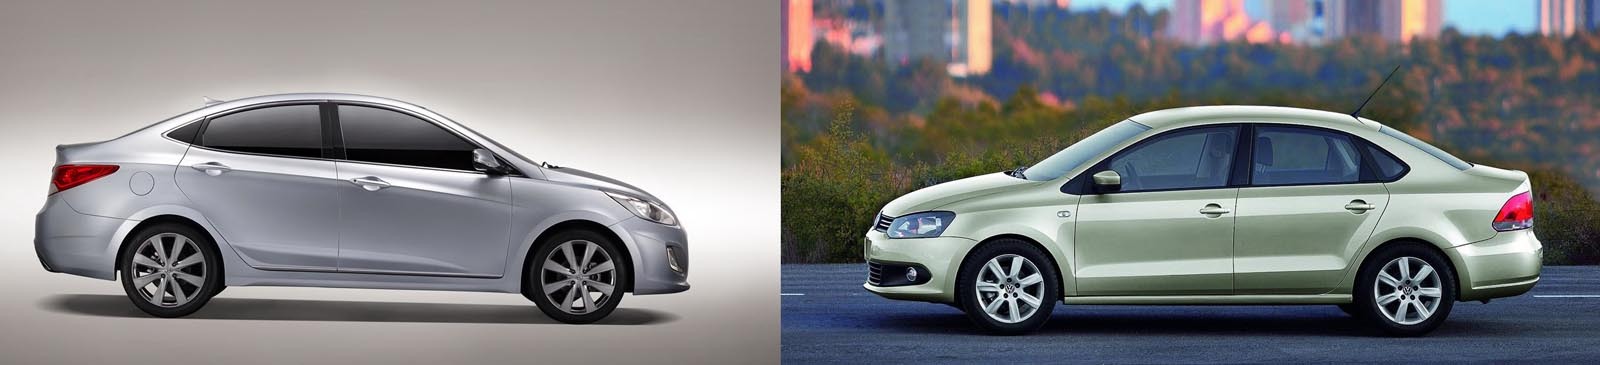 Dilema pentru familistii amatori de sedanuri de clasa mica: viitorul Hyundai Accent vs. Volkswagen Polo Sedan